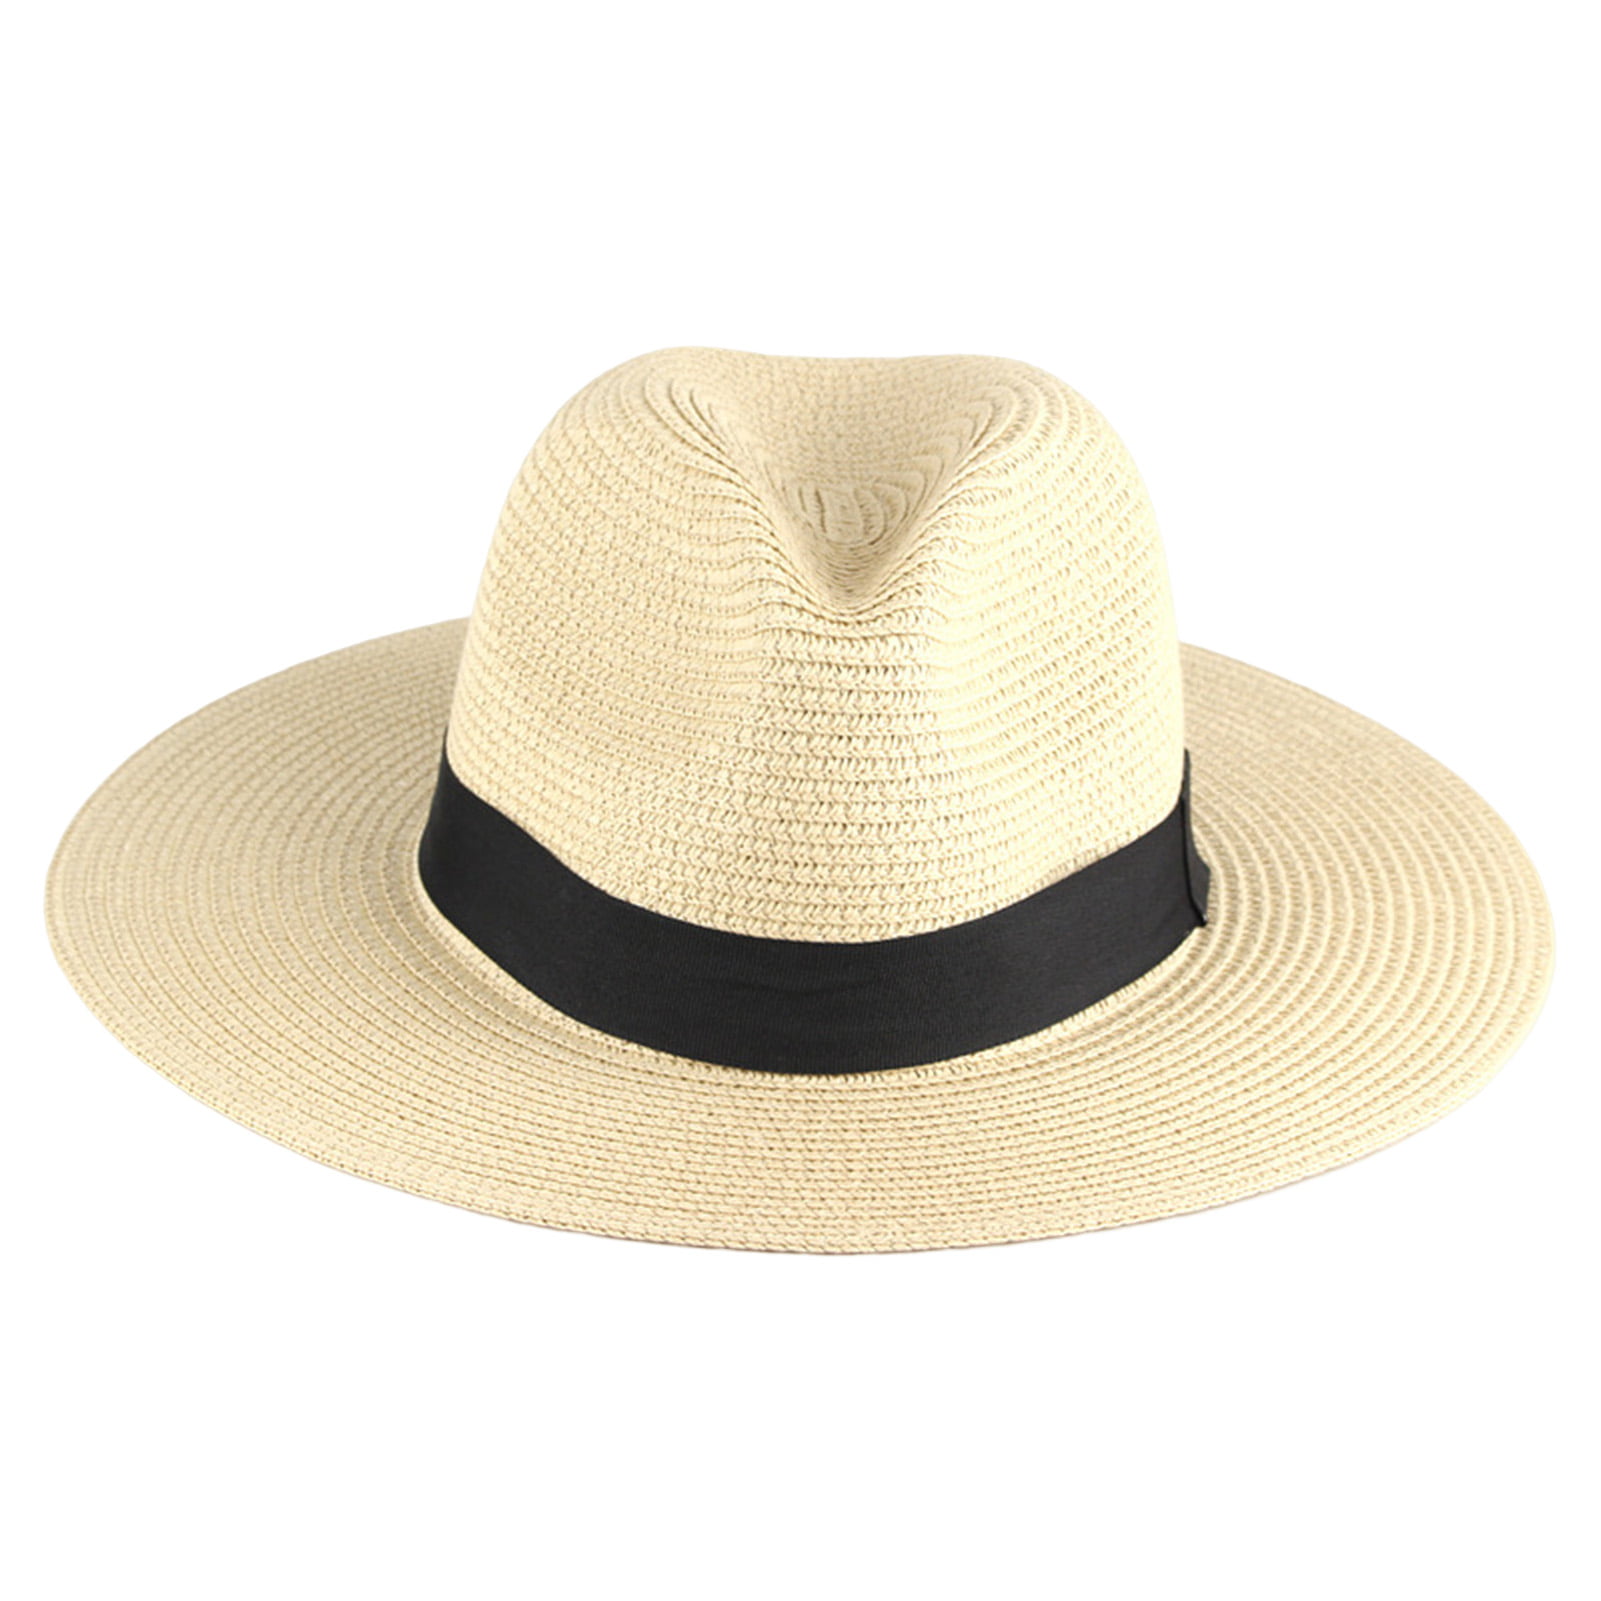 Hats for Women - Summer Beach Straw Hat, Wide Brim Sun Hat UV